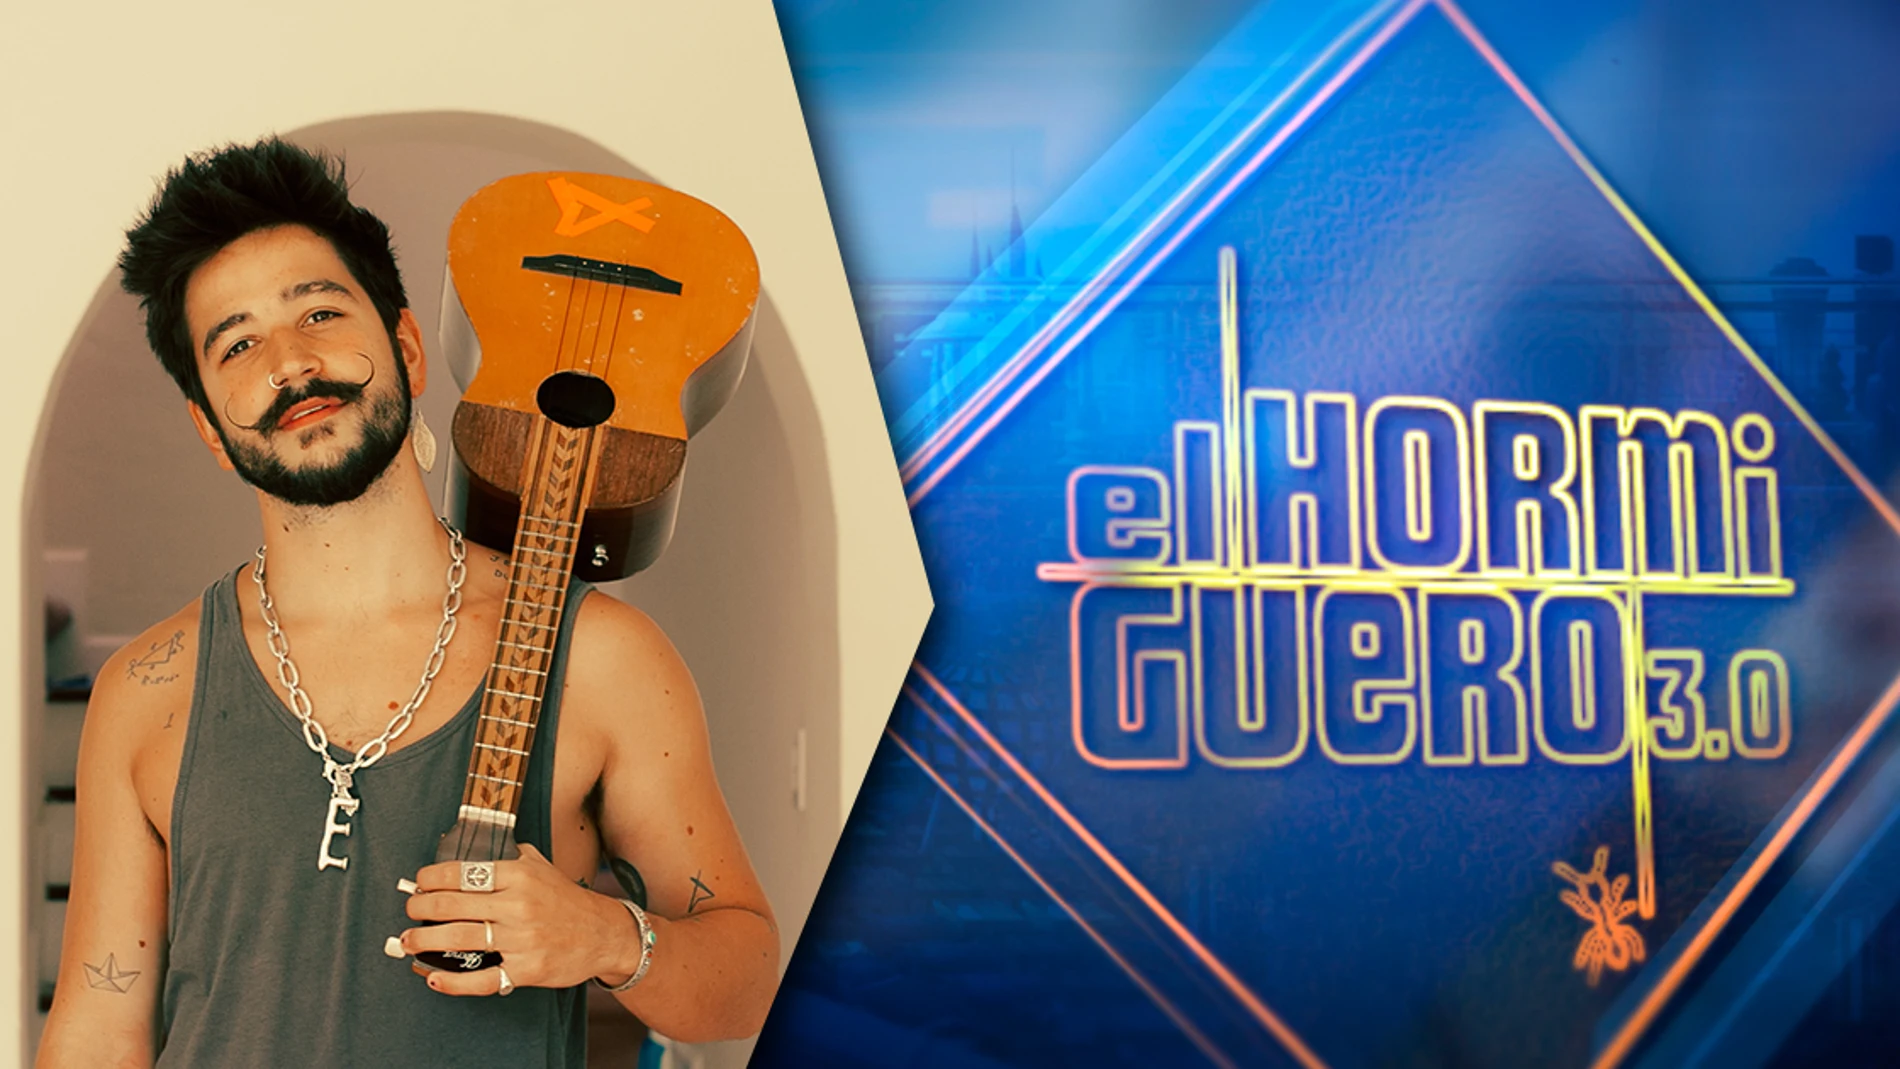 Camilo llena 'El Hormiguero 3.0' de buena música este martes